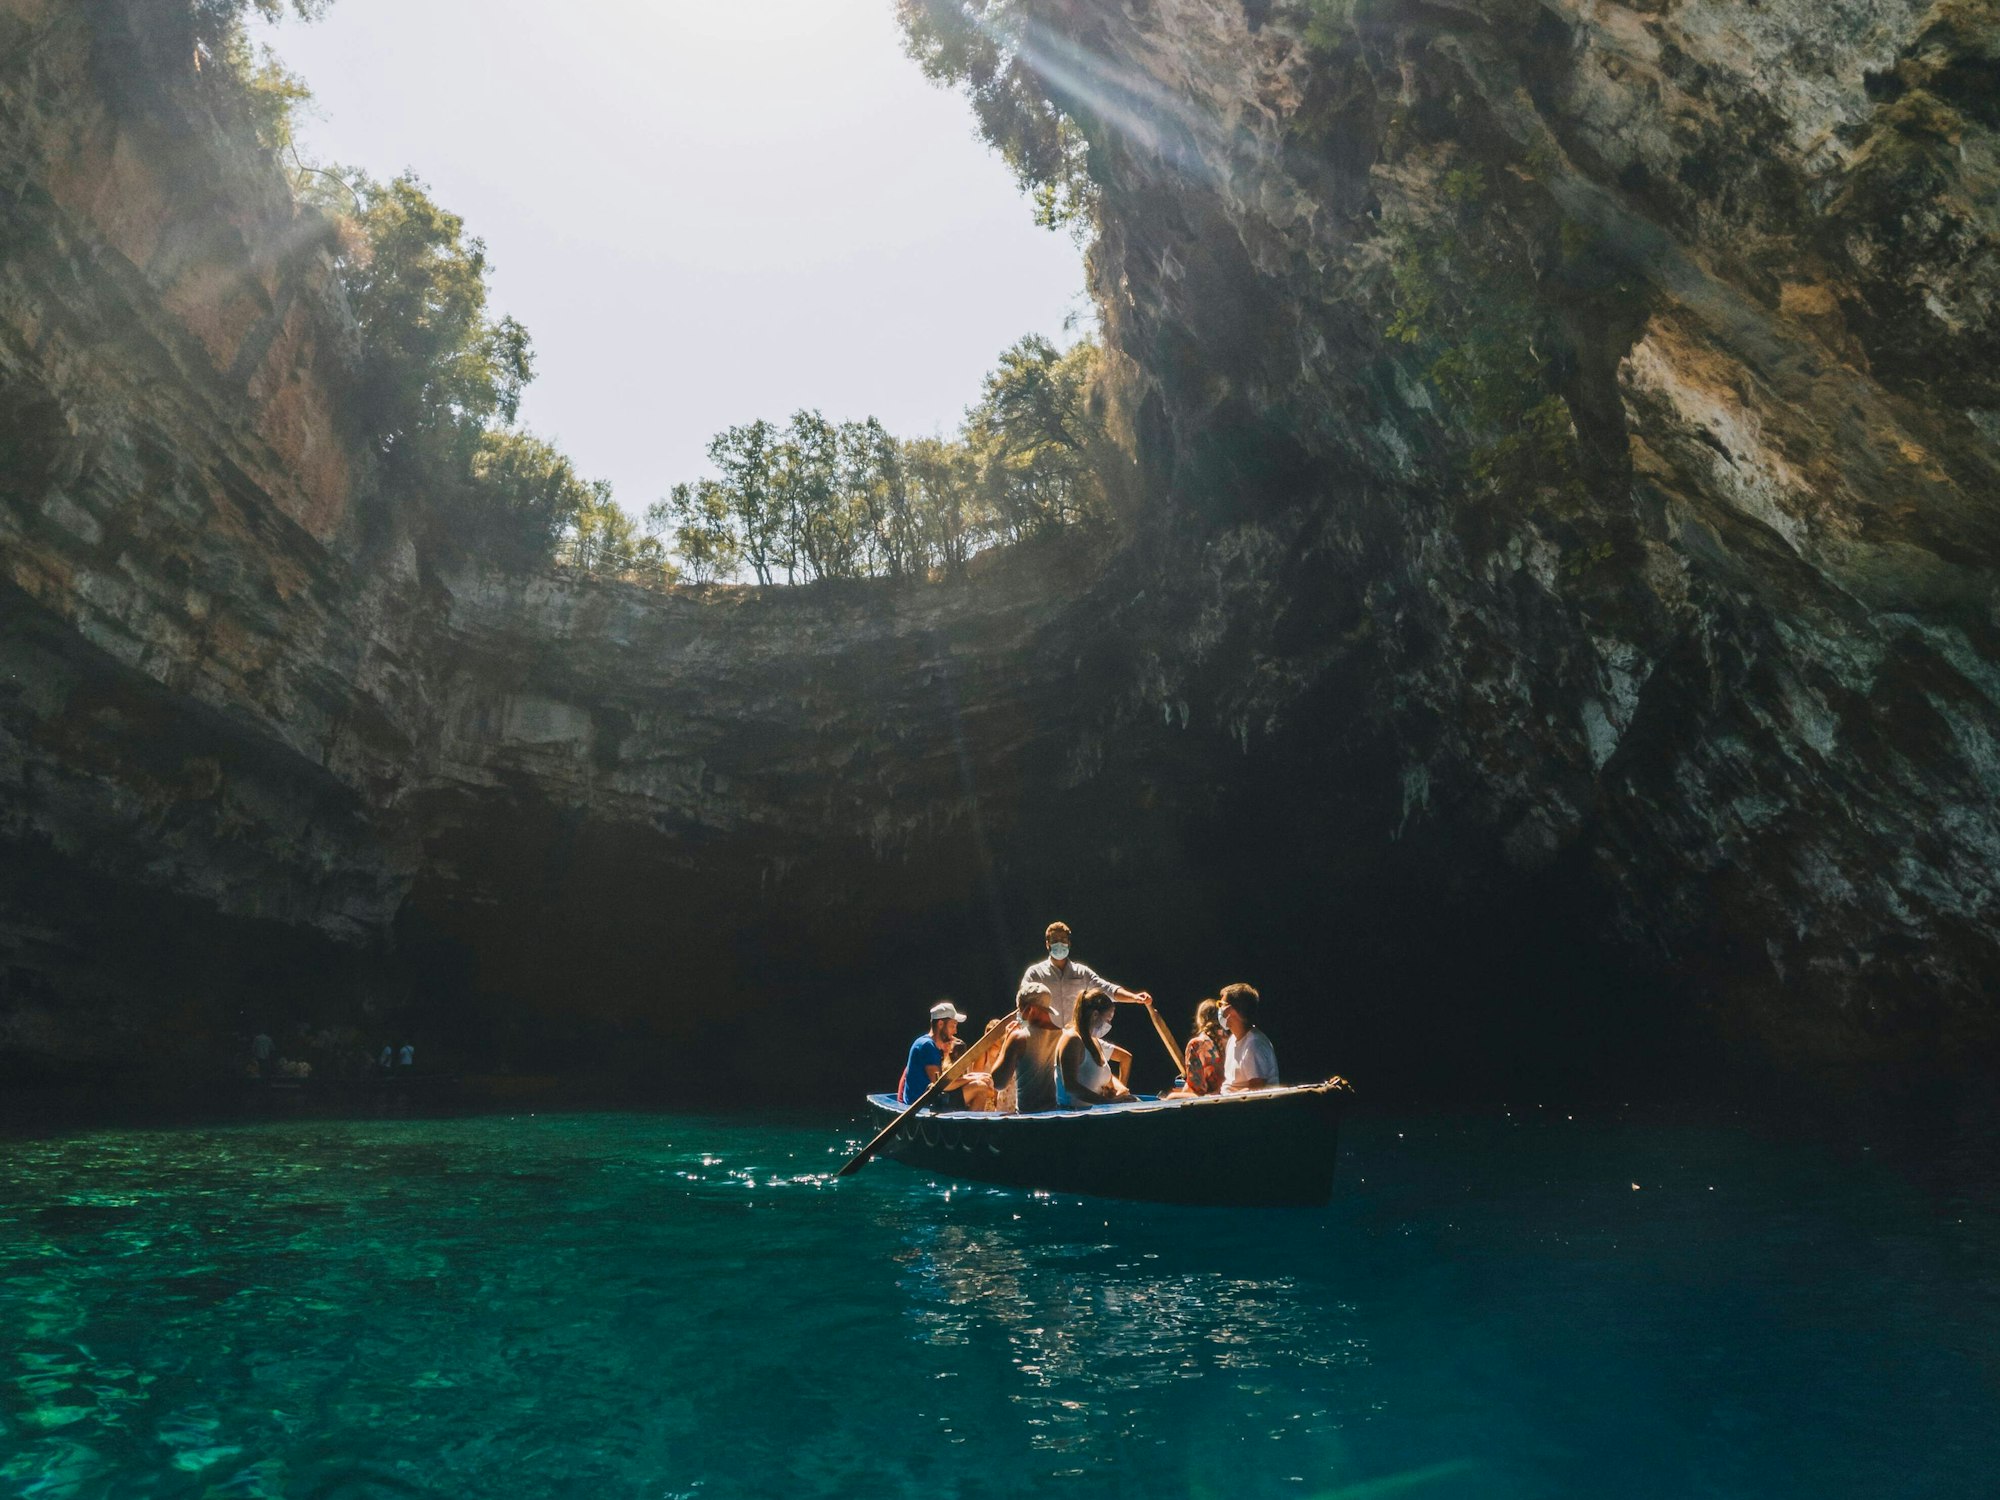 Ein Boot mit Touristinnen und Touristen fährt durch den blauen See der Melissani Höhle. Oben im Bild sieht man die Öffnung der Höhle und den Himmel.